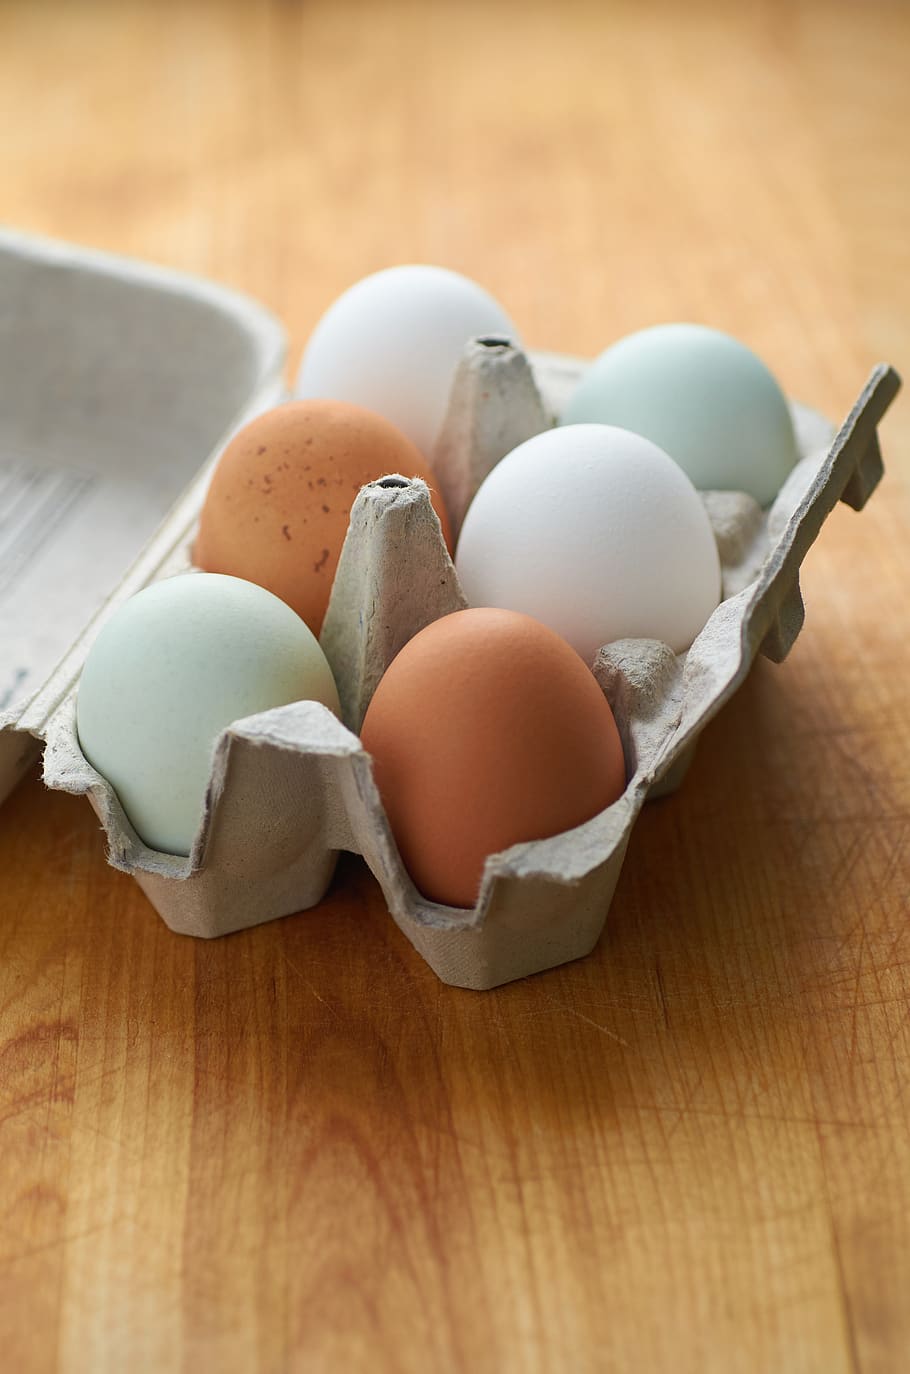 fazenda, fresco, ovos, meia dúzia, caixa, frango, cor, casca, ovo, orgânico